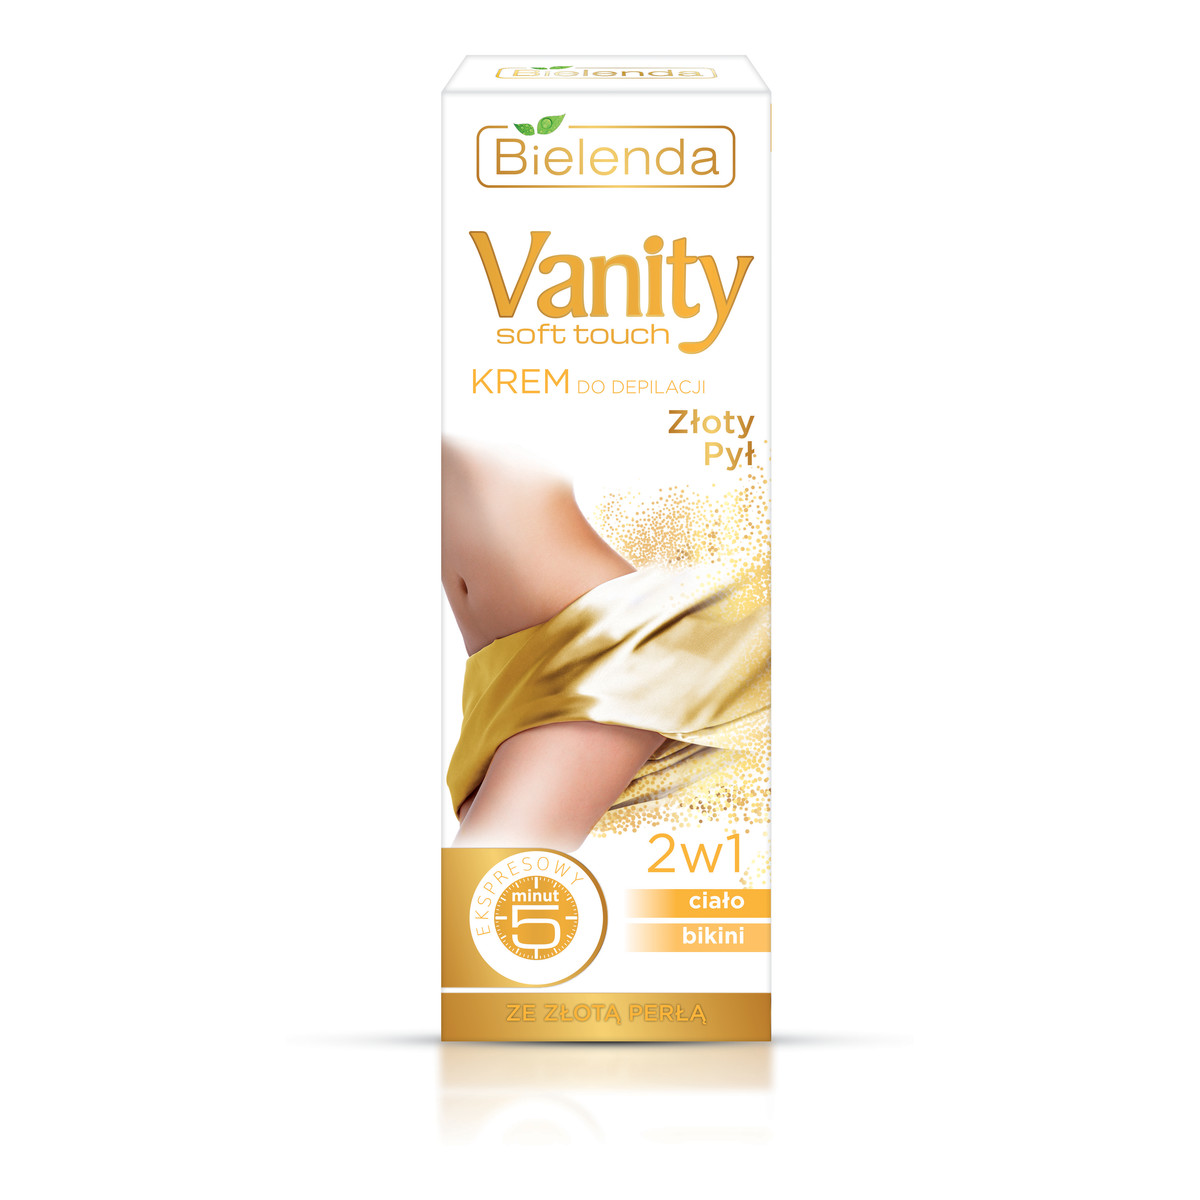 Bielenda Vanity Soft Touch Krem Do Depilacji Złoty Pył 100ml